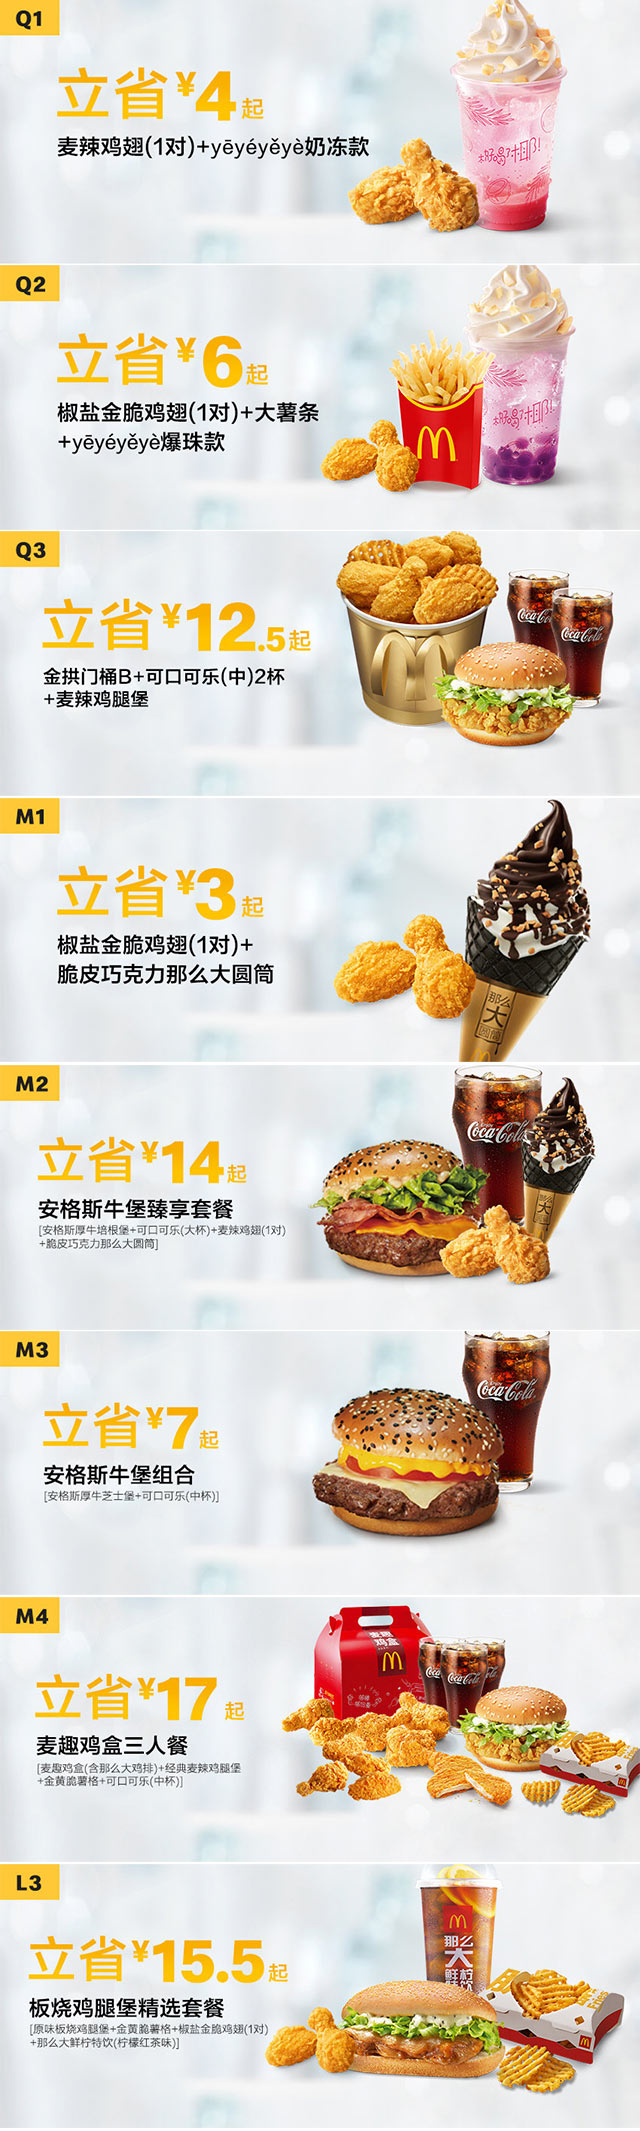 麦当劳优惠券2019年5月15日至6月4日整张版本，点餐手机出示或报优惠码有优惠价